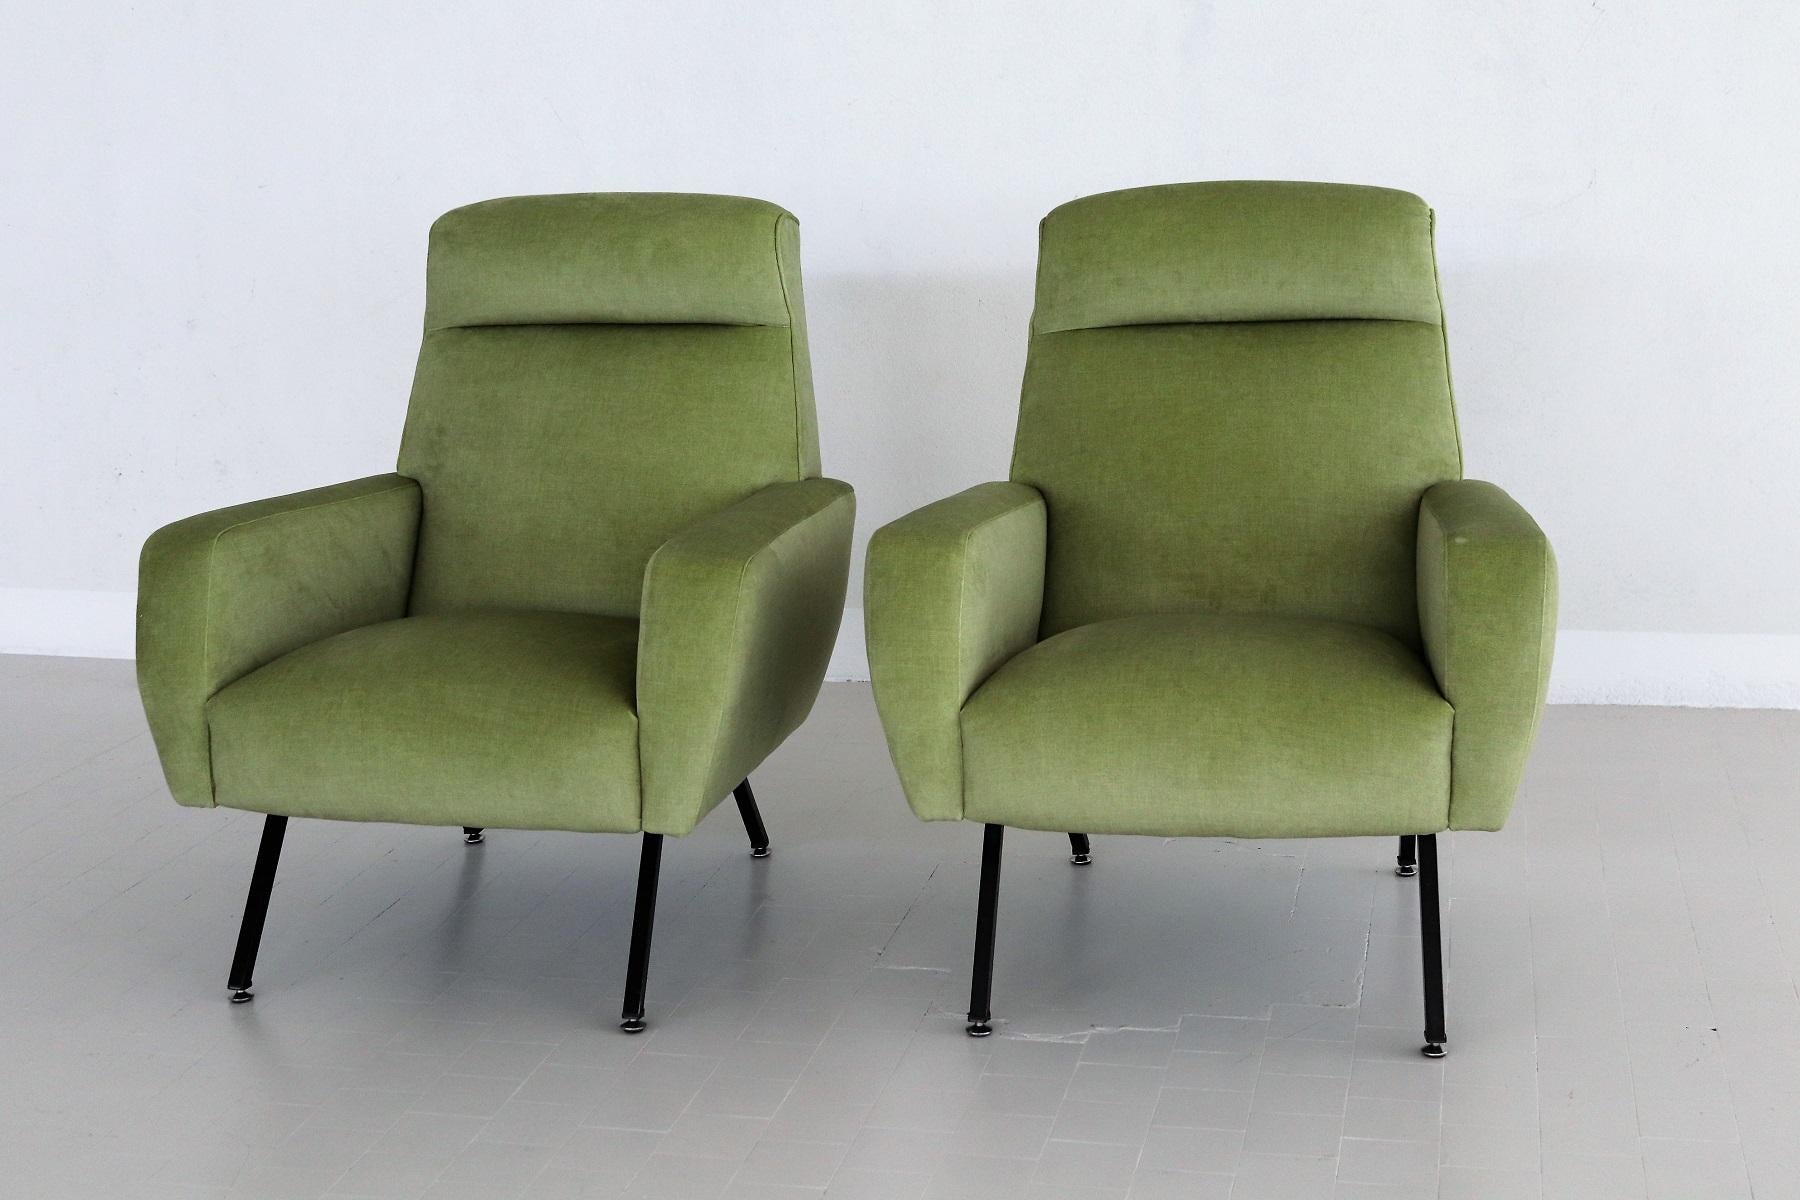 Italian Midcentury Armchairs Re-Upholstered in Green Velvet, 1960s For Sale 1